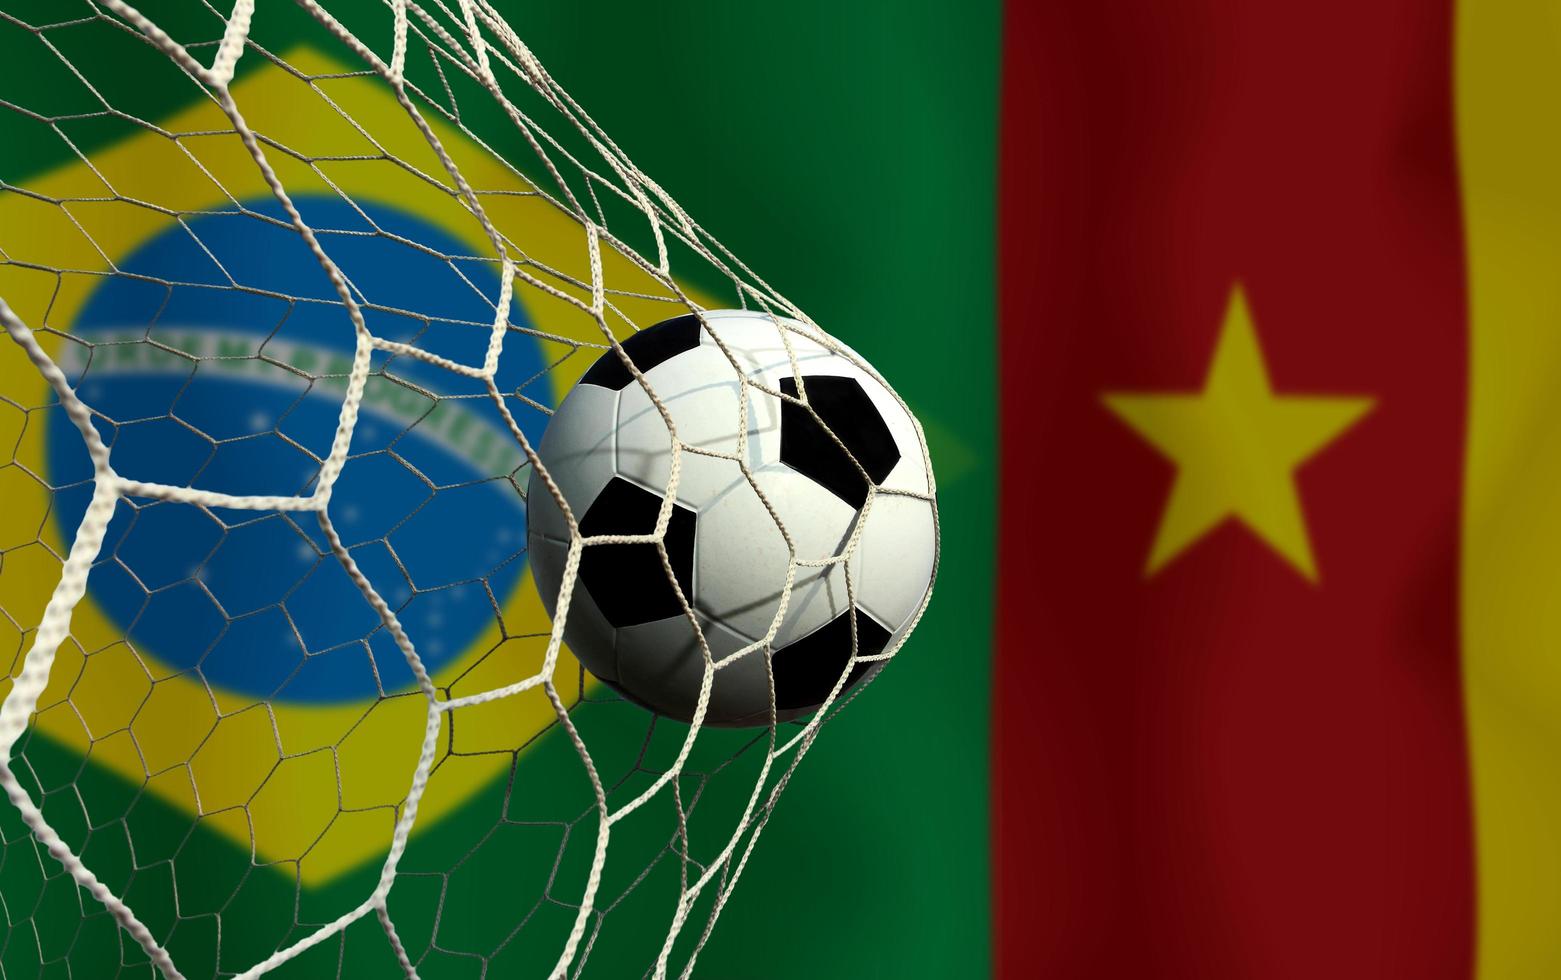 competición de copa de fútbol entre el nacional de brasil y el nacional de camerún. foto